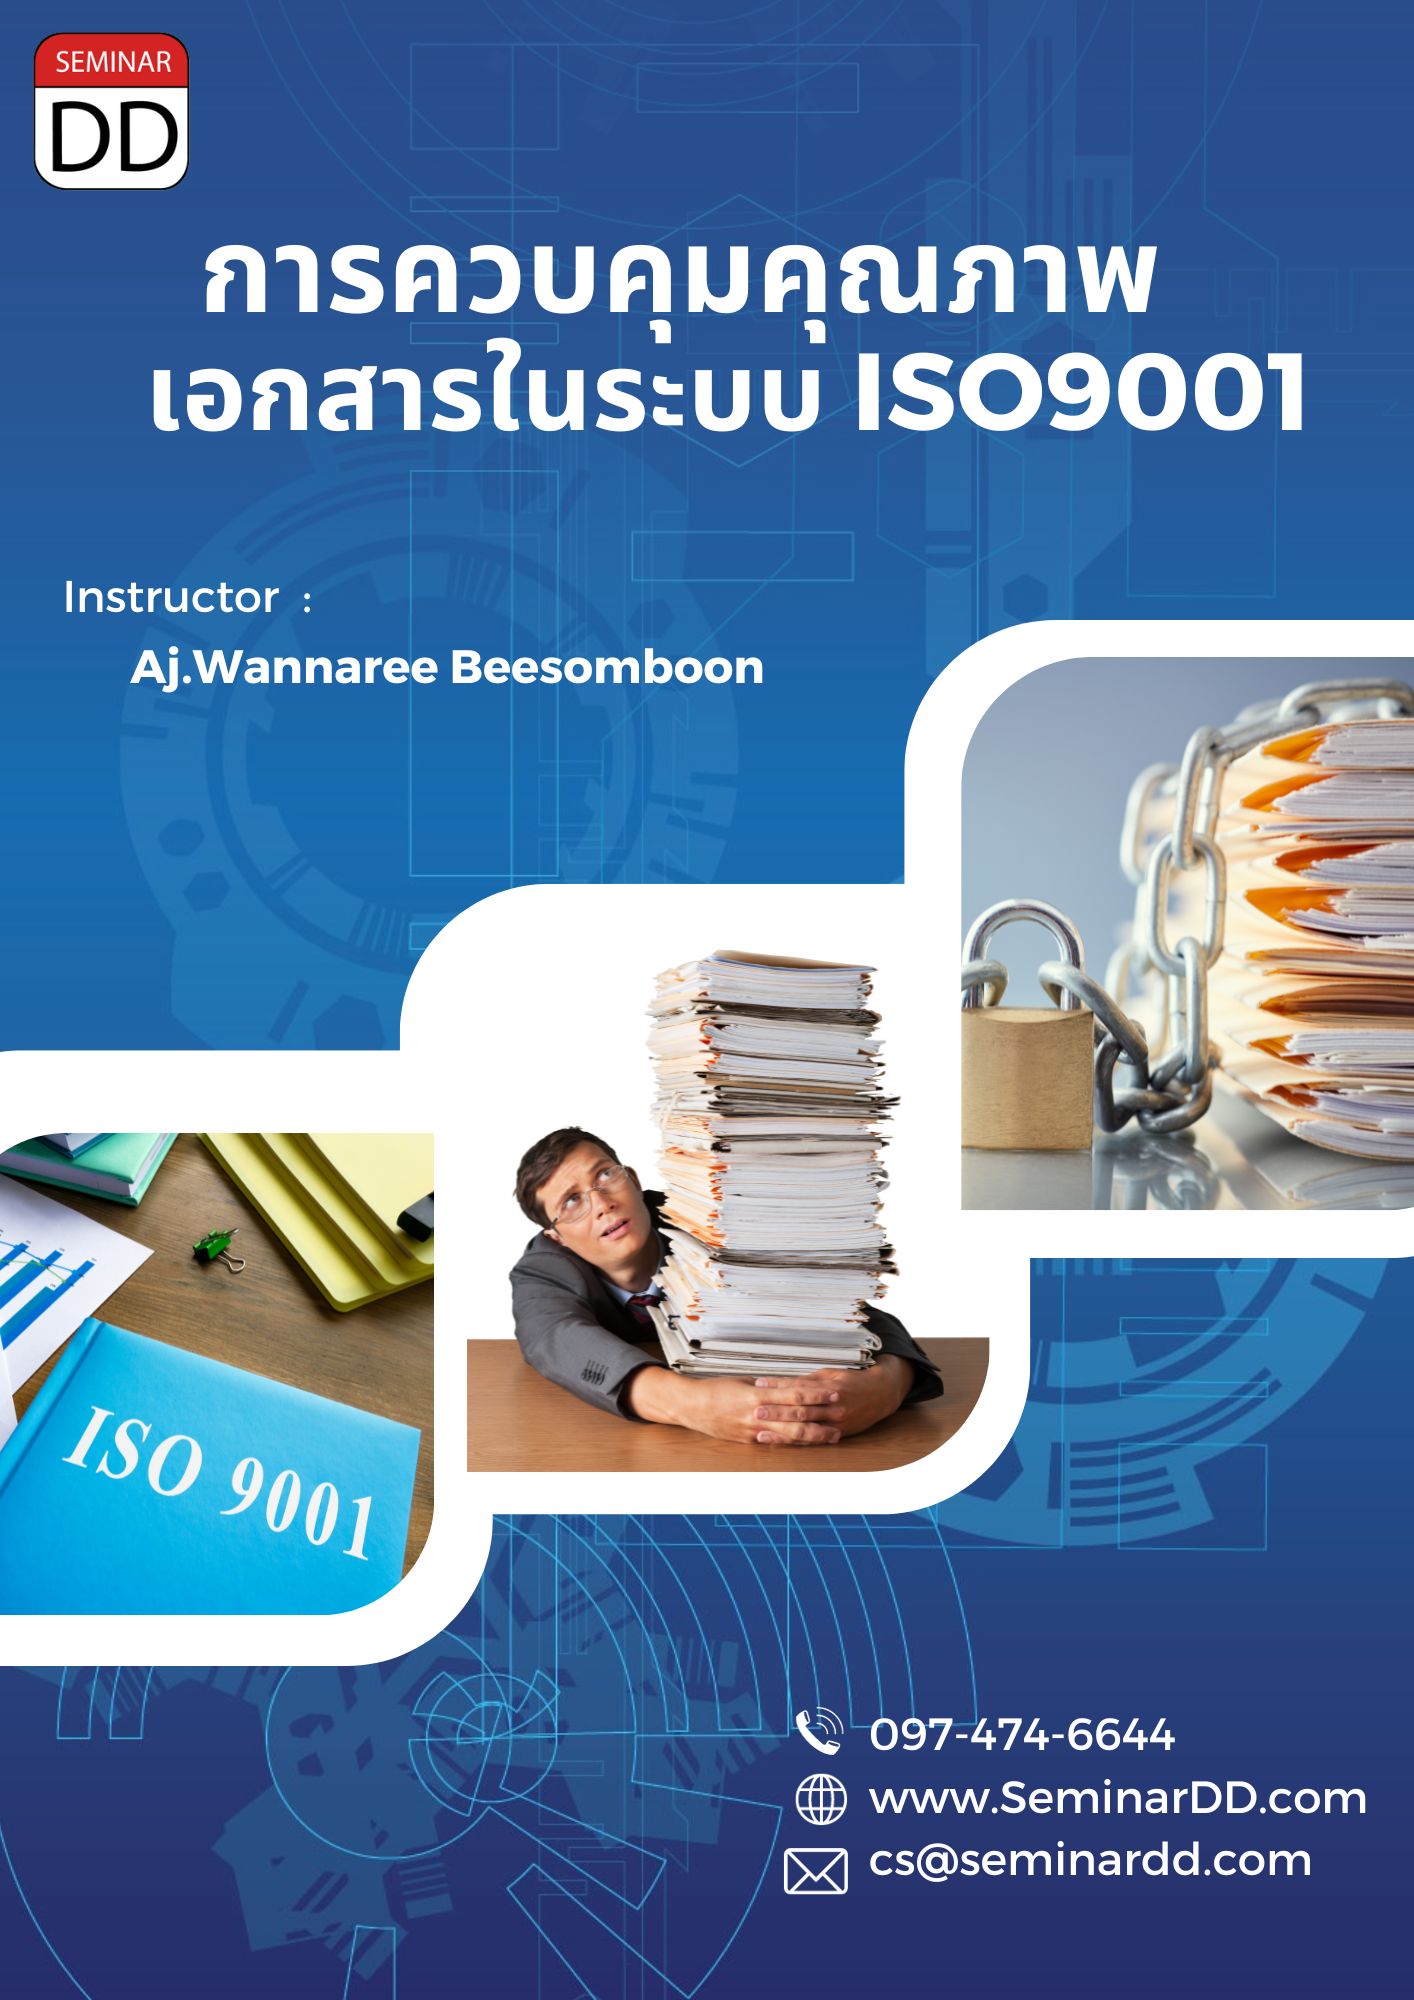 หลักสูตร การจัดทำเอกสารและควบคุมเอกสารในระบบคุณภาพ ISO 9001 : 2015